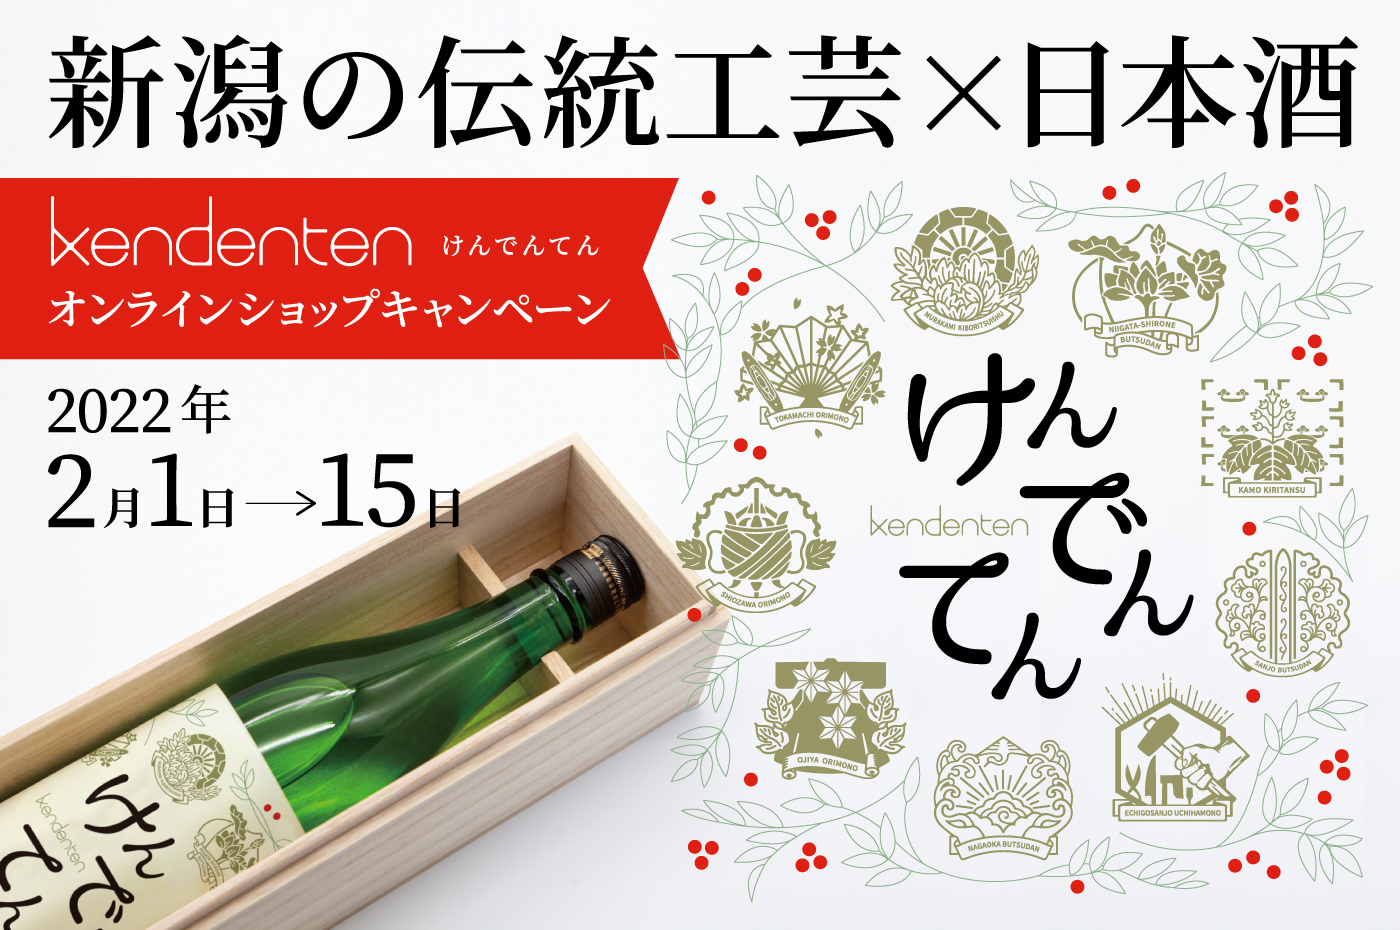 2022/2/1-15　新潟の伝統工芸×日本酒　kendenten けんでんてん オリジナルラベル日本酒プレゼントキャンペーン【終了】